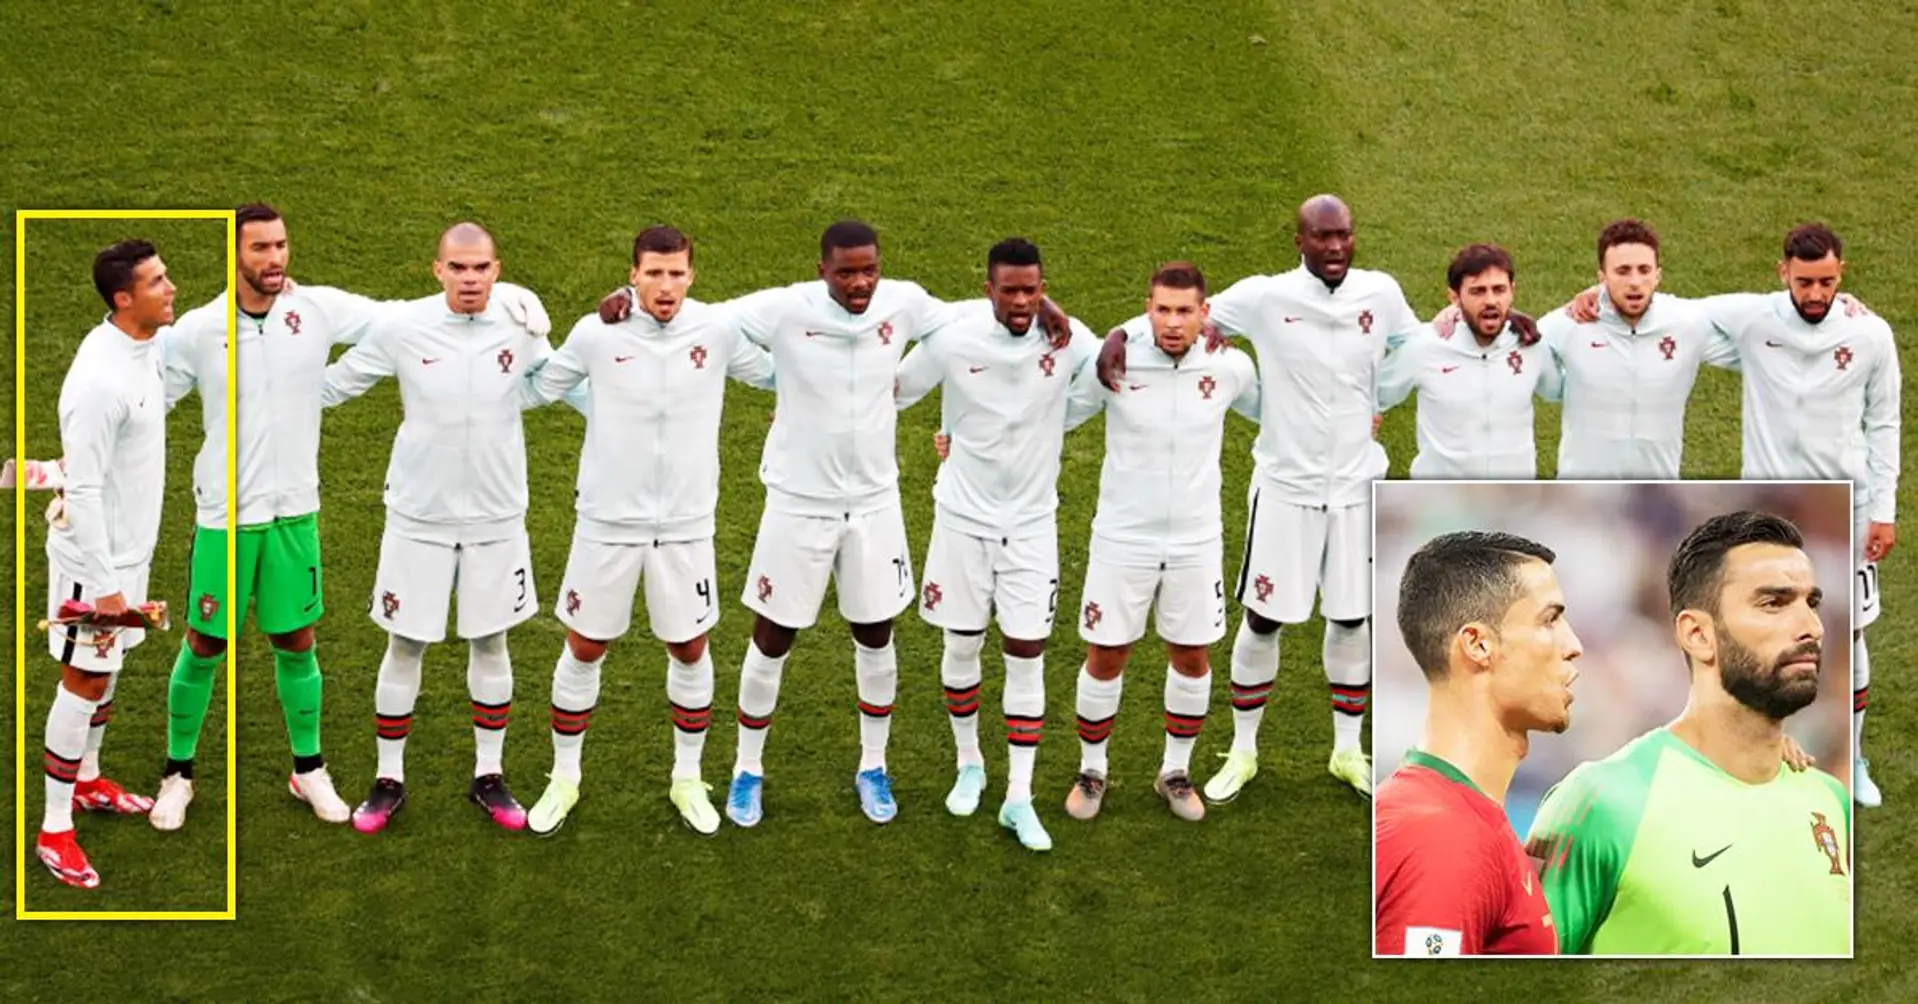 ERKLÄRT: Warum Cristiano Ronaldo bei der Portugal-Hymne immer seitlich steht